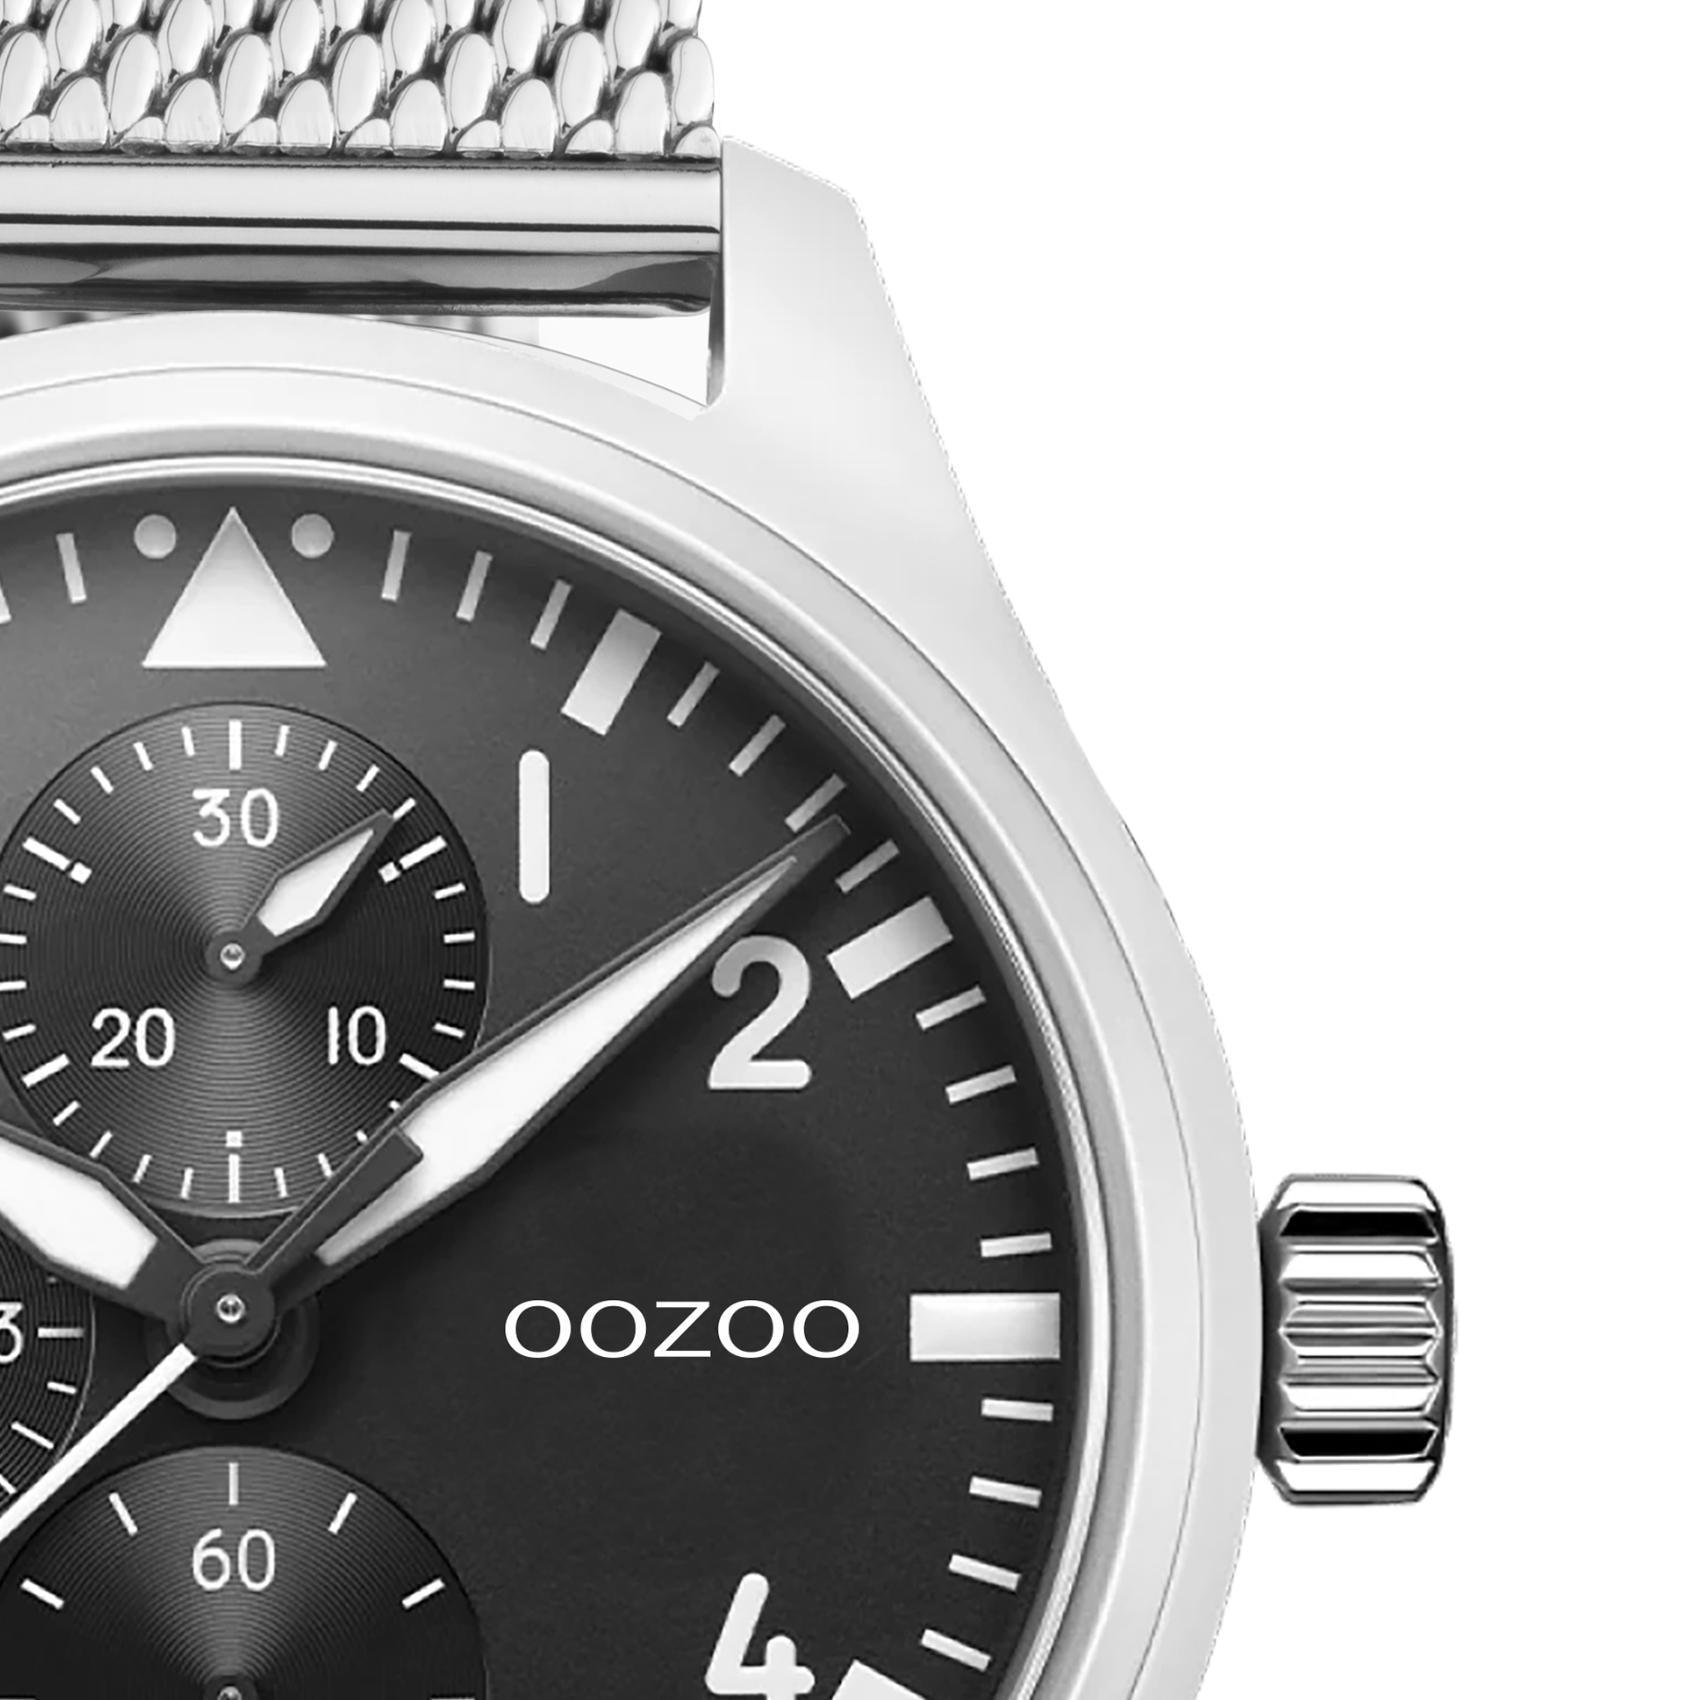 Ρολόι Oozoo C10958 με ασημί ατσάλινο μπρασελέ ,μαύρο καντράν διαμέτρου 42mm και μηχανισμό μπαταρίας quartz.